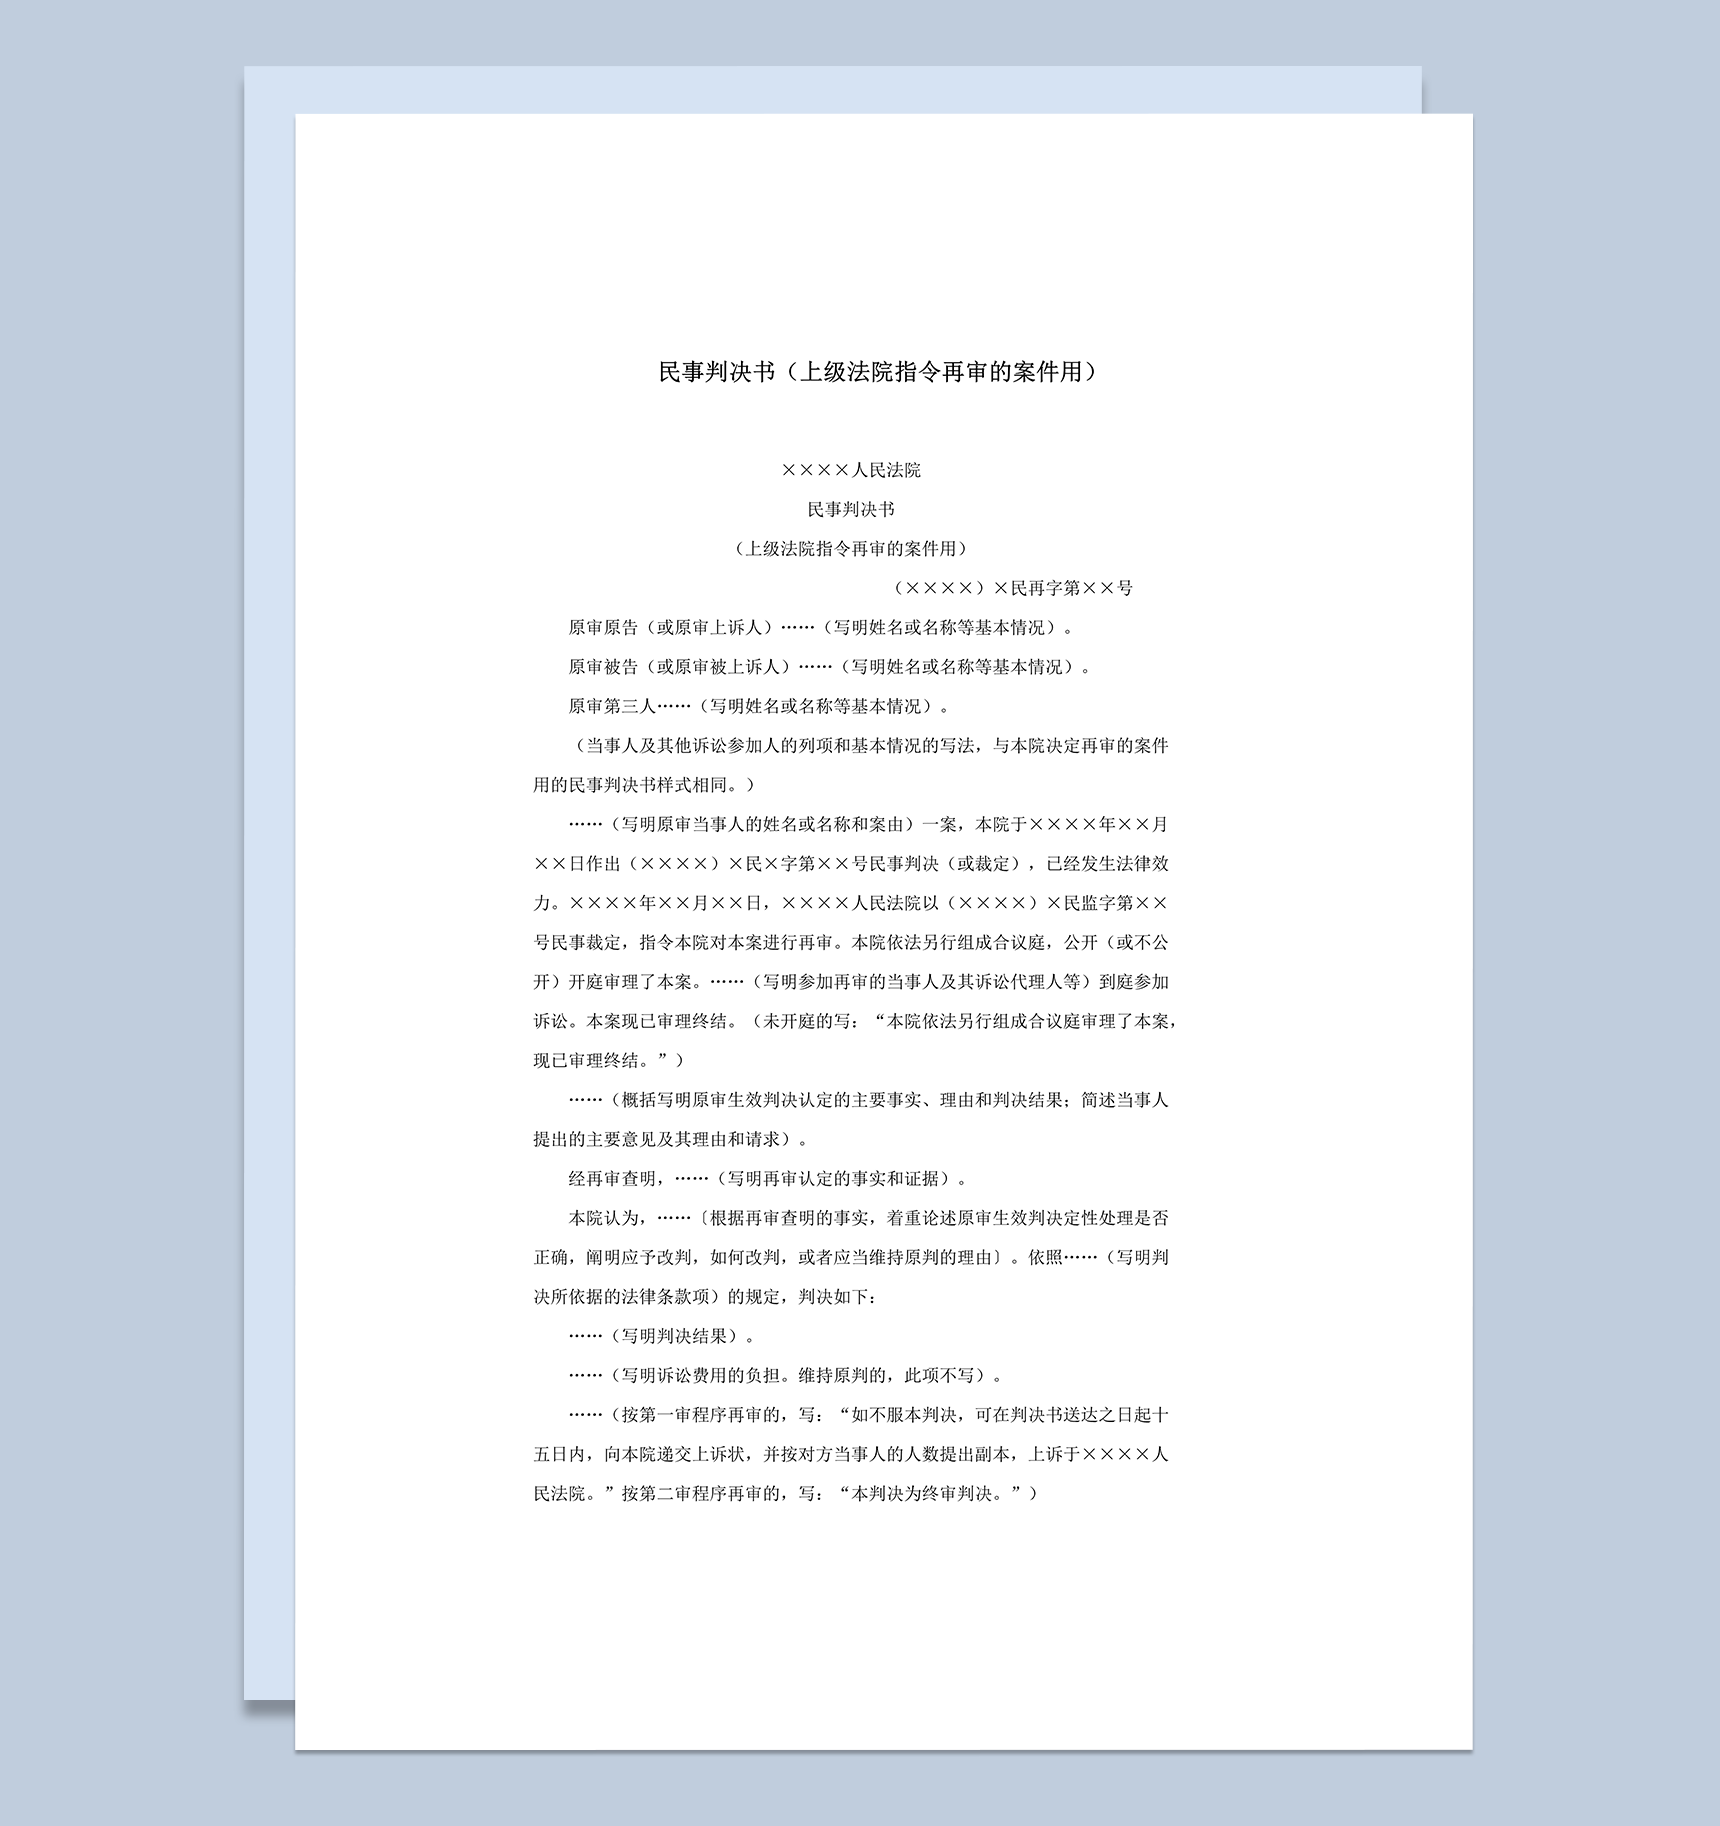 民事判决书上级法院指令再审的案件用word模板